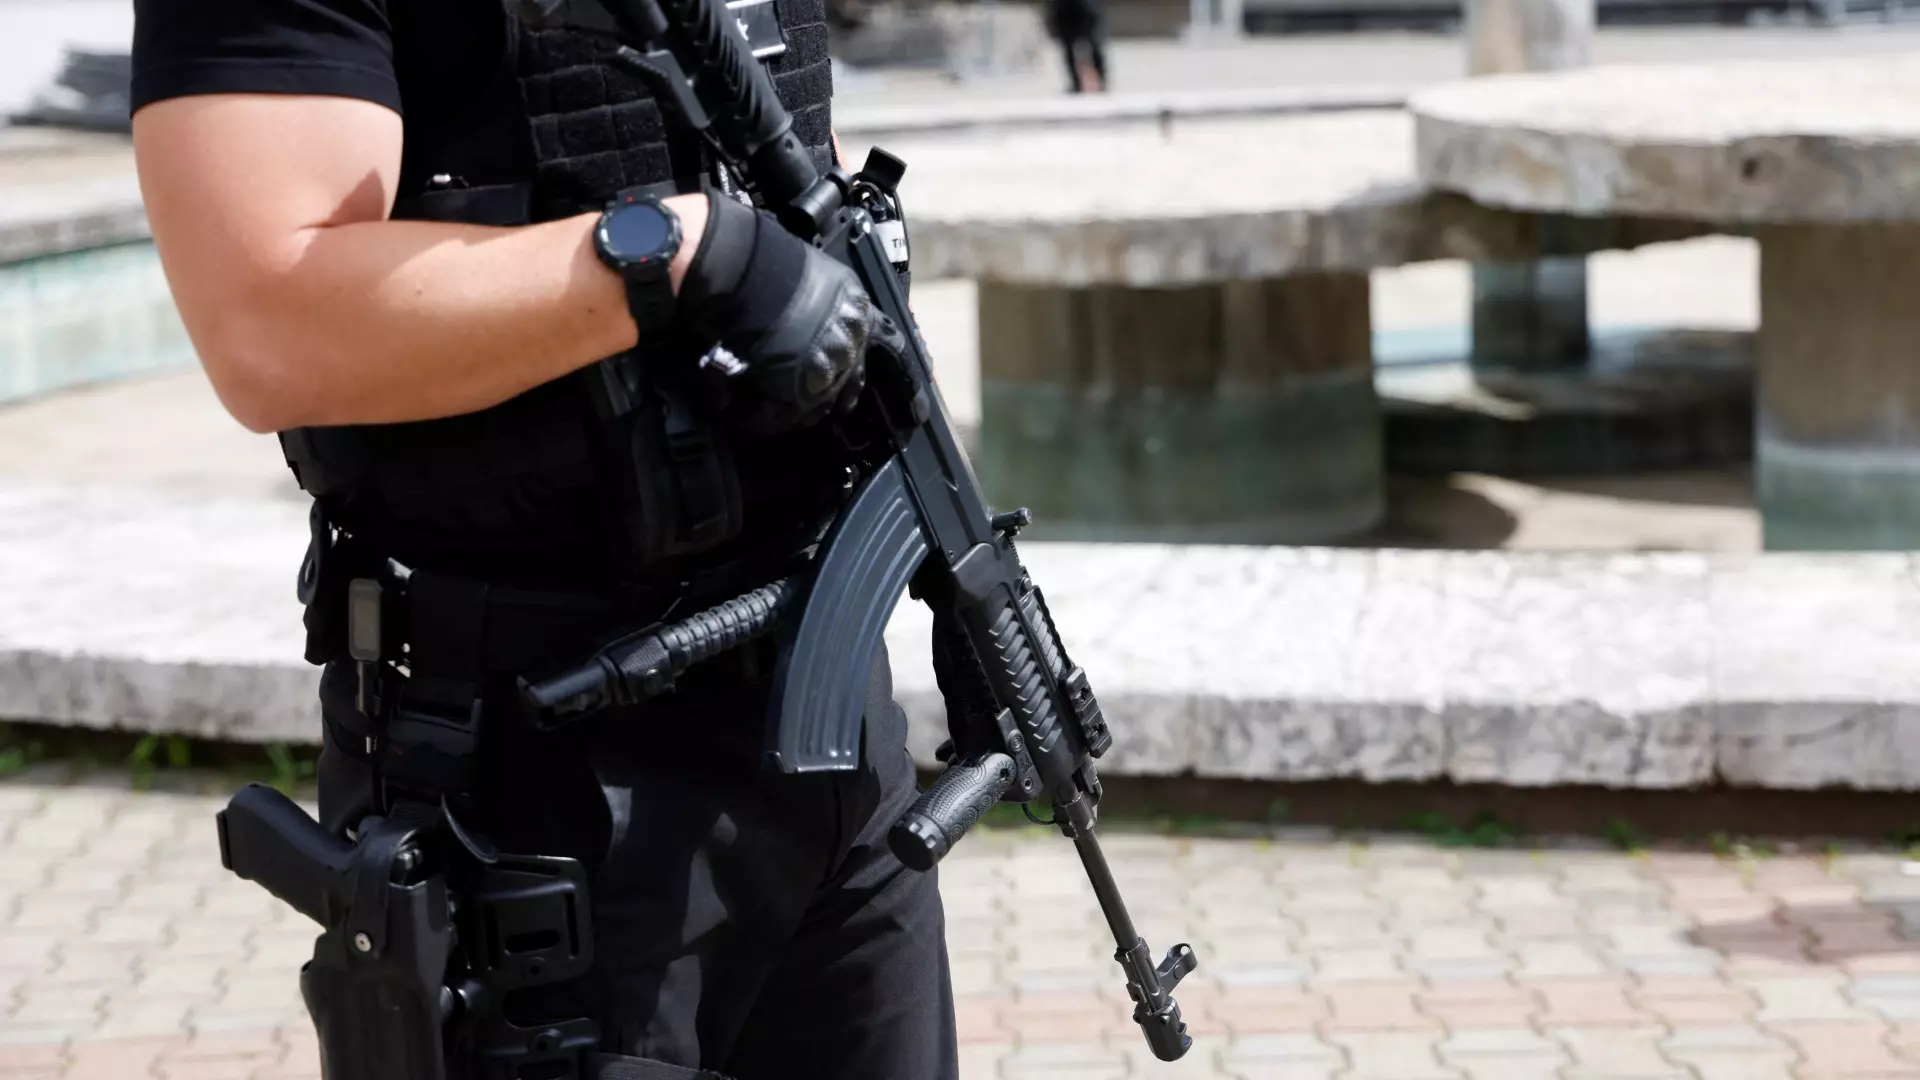 Tíz rendőr vitte el a pozsonyi férfit, aki megfenyegetett egy kormánypárti képviselőt